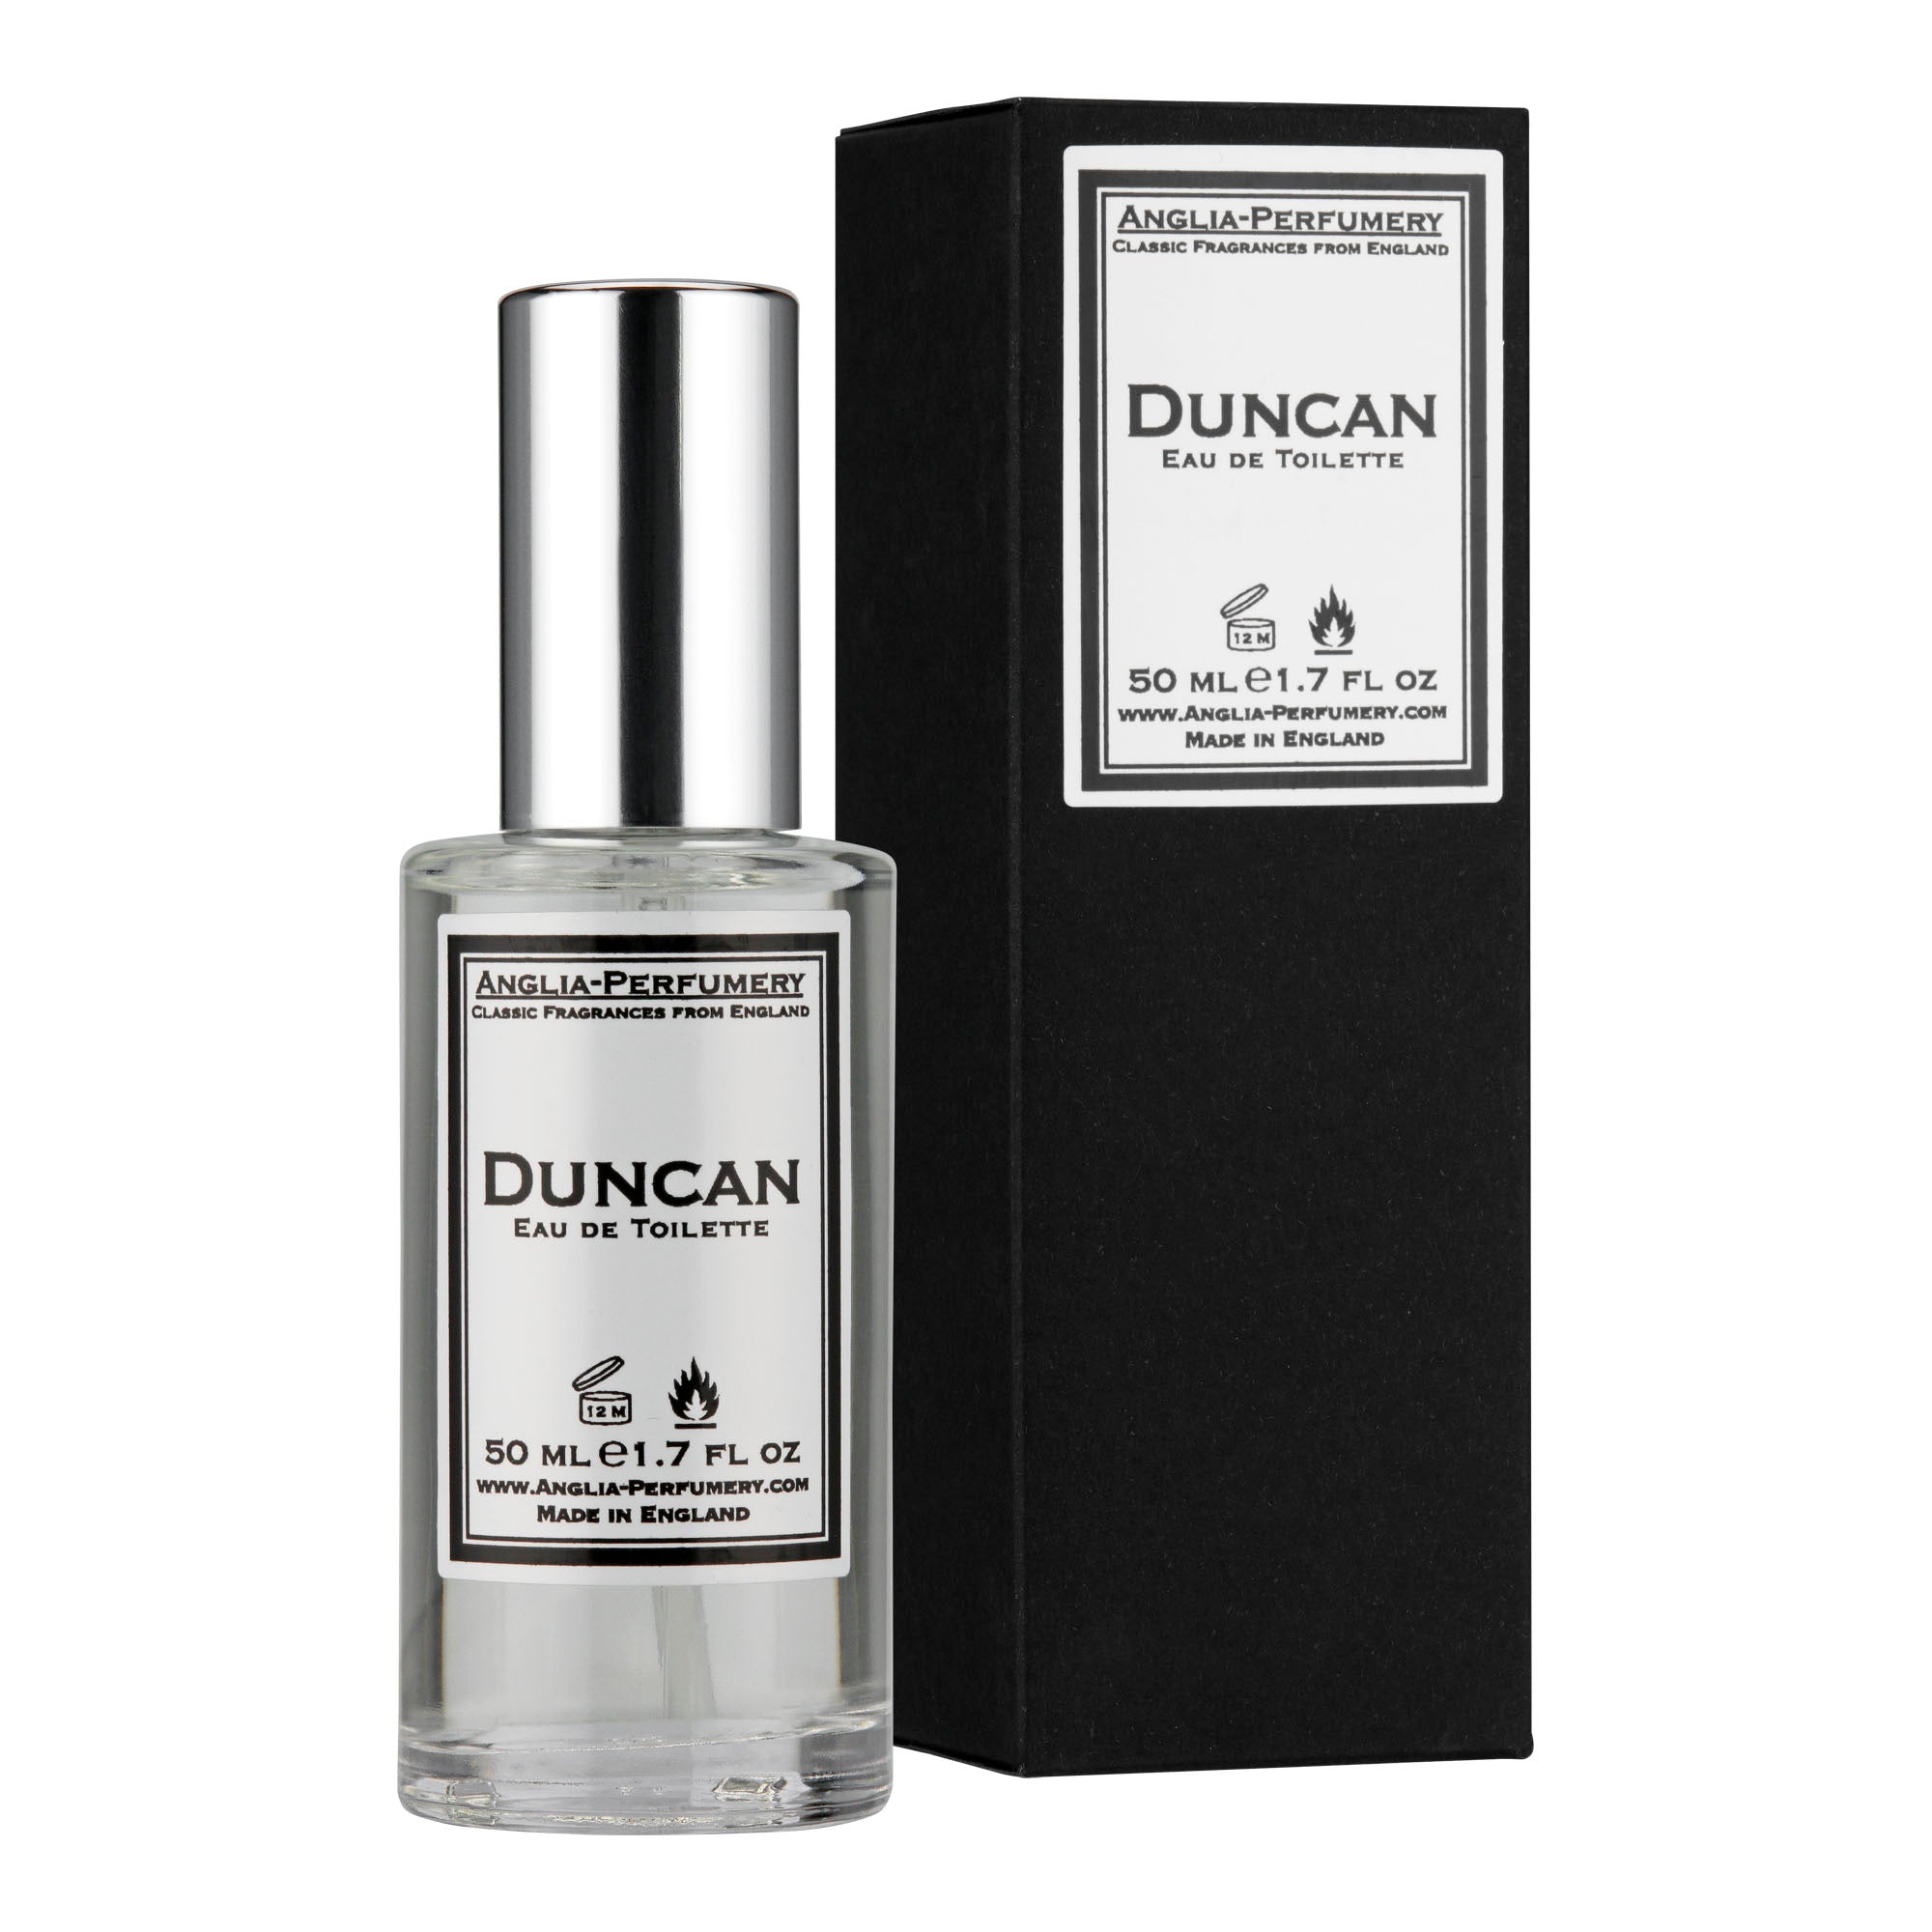 Duncan - Eau de Toilette - 50ml